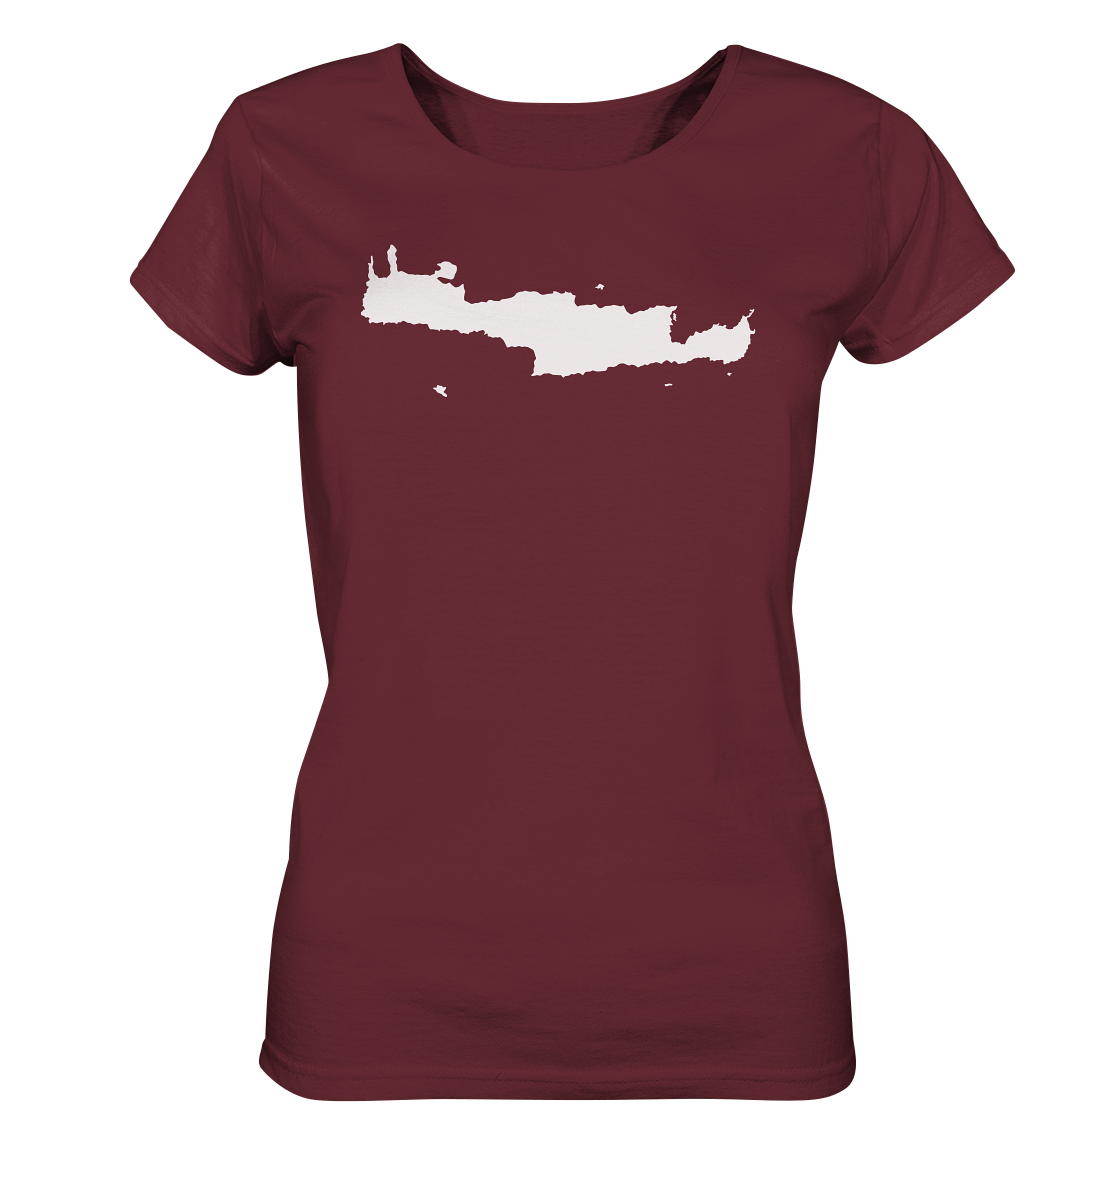 Kreta Insel Silhouette - Ladies Organic Shirt